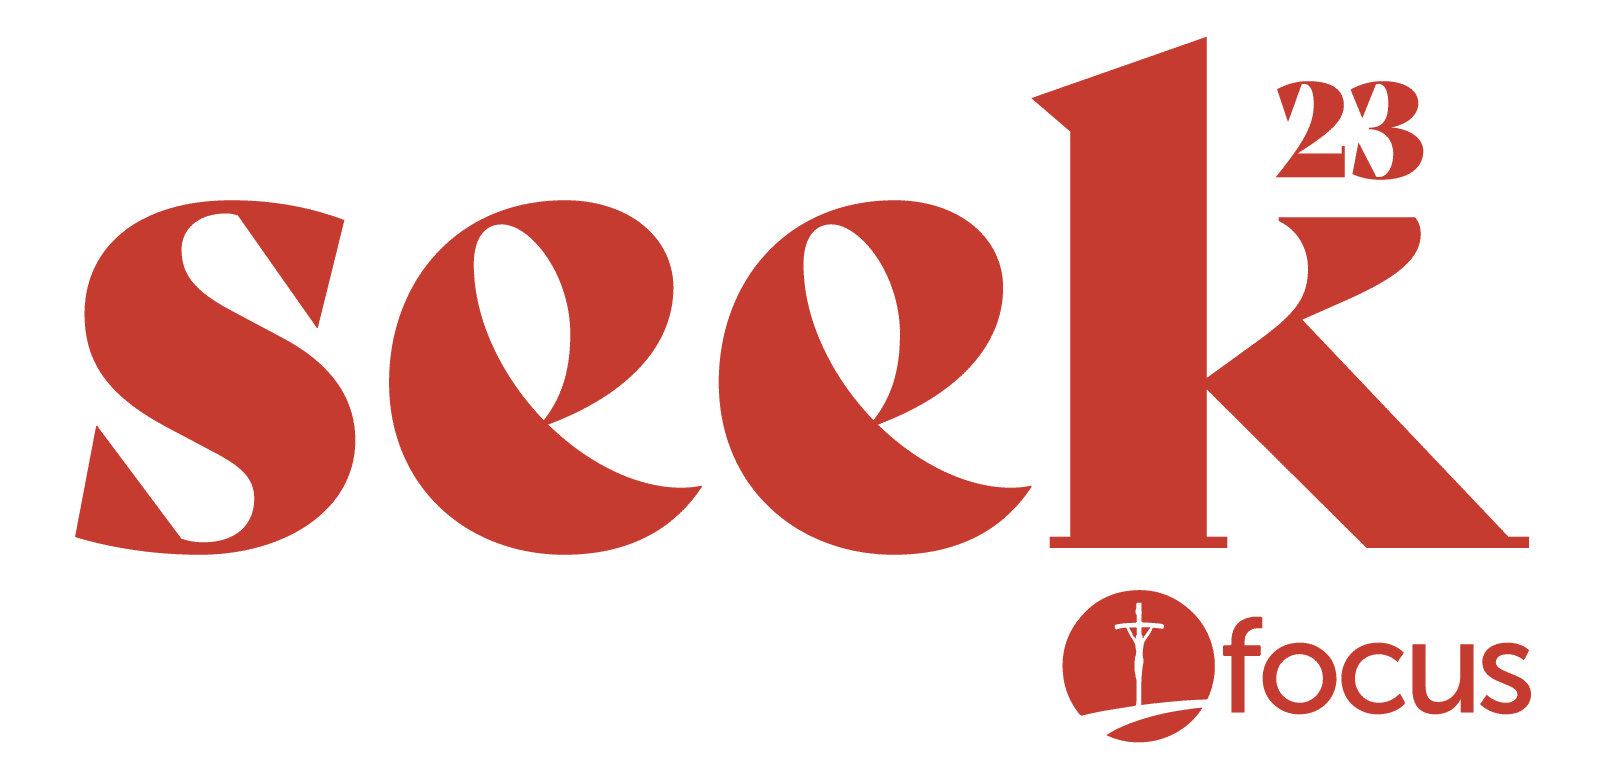 Seek23 Logo Red